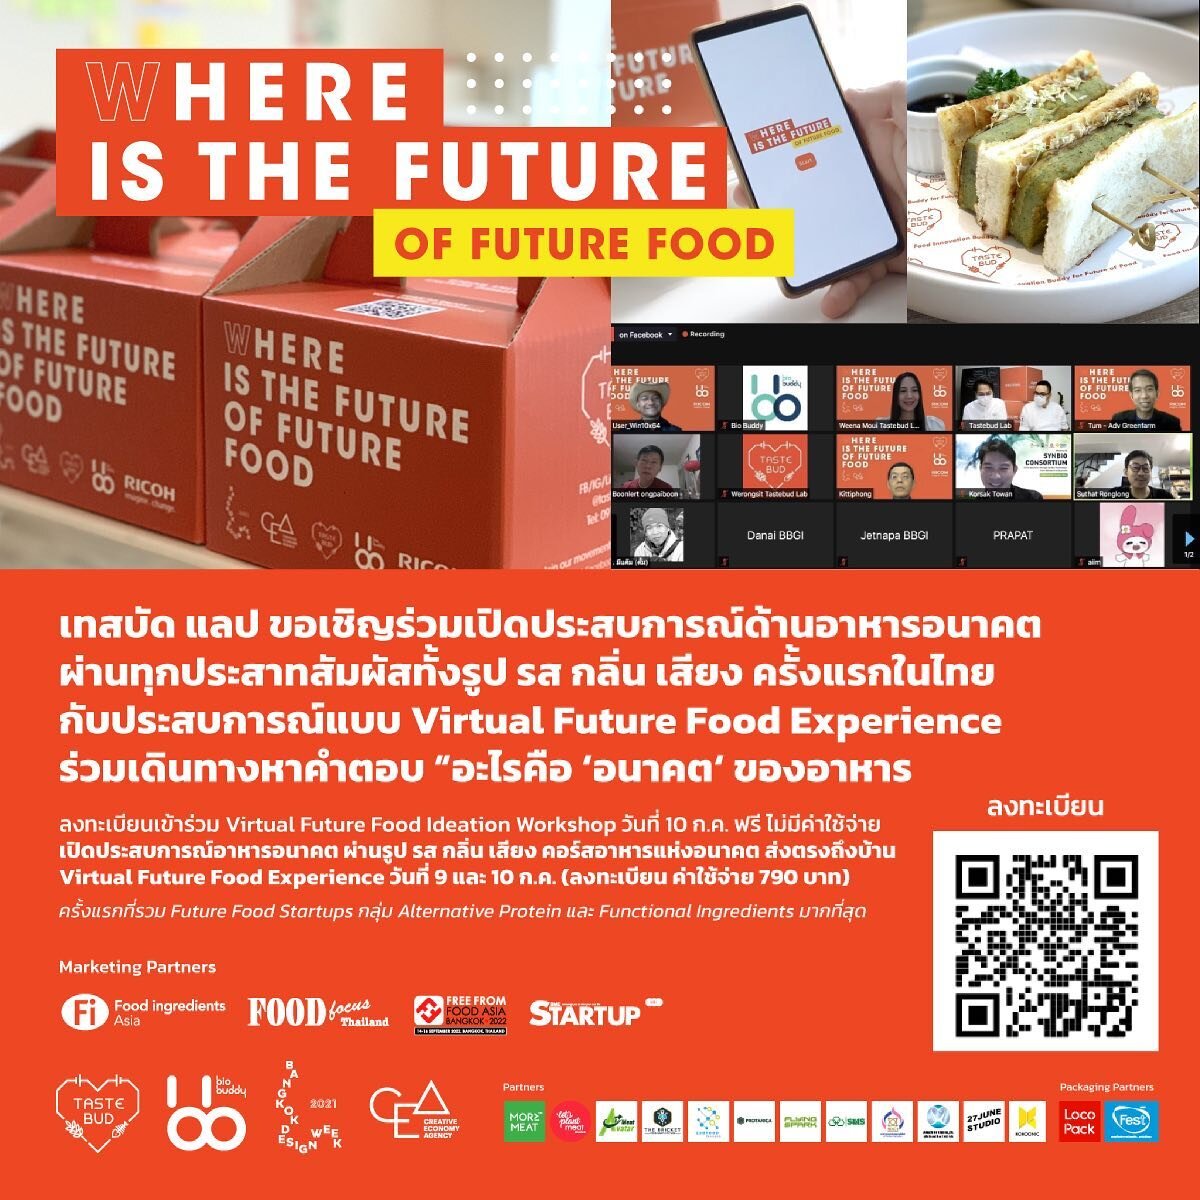 ครั้งแรกในไทย‼️ มาร่วมกันค้นหาคำตอบของ อาหารอนาคต และเปิดประสบการณ์อาหารอนาคต ส่งตรงถึงบ้านได้แล้ววันนี้
ลงทะเบียนเข้าร่วมงานหรือสั่ง Future Food Box Set: https://www.tastebudlab.com/future-food-network

🧡 งาน Where is the future of future food งานก